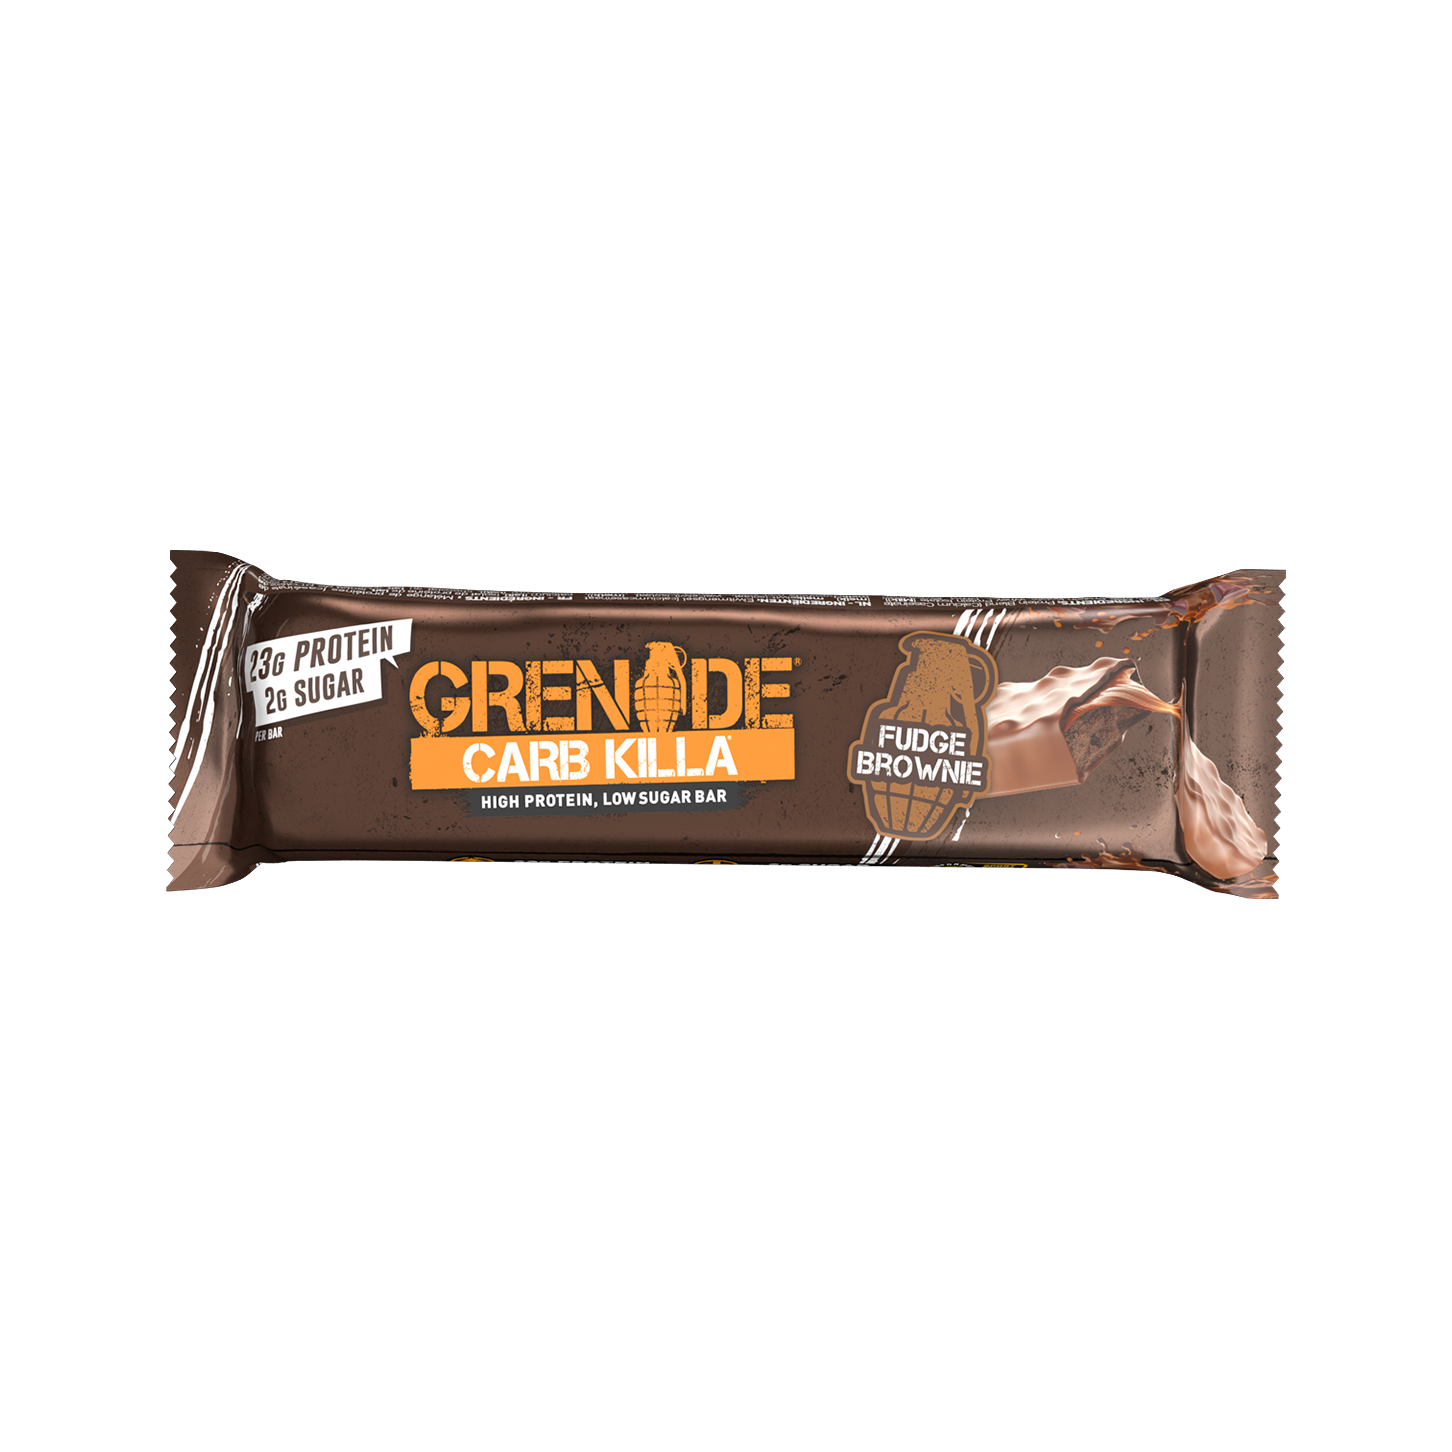 Grenade Carb Killa Keto Protein Bars (1 bar) Protein Snacks Fudge Brownie Grenade